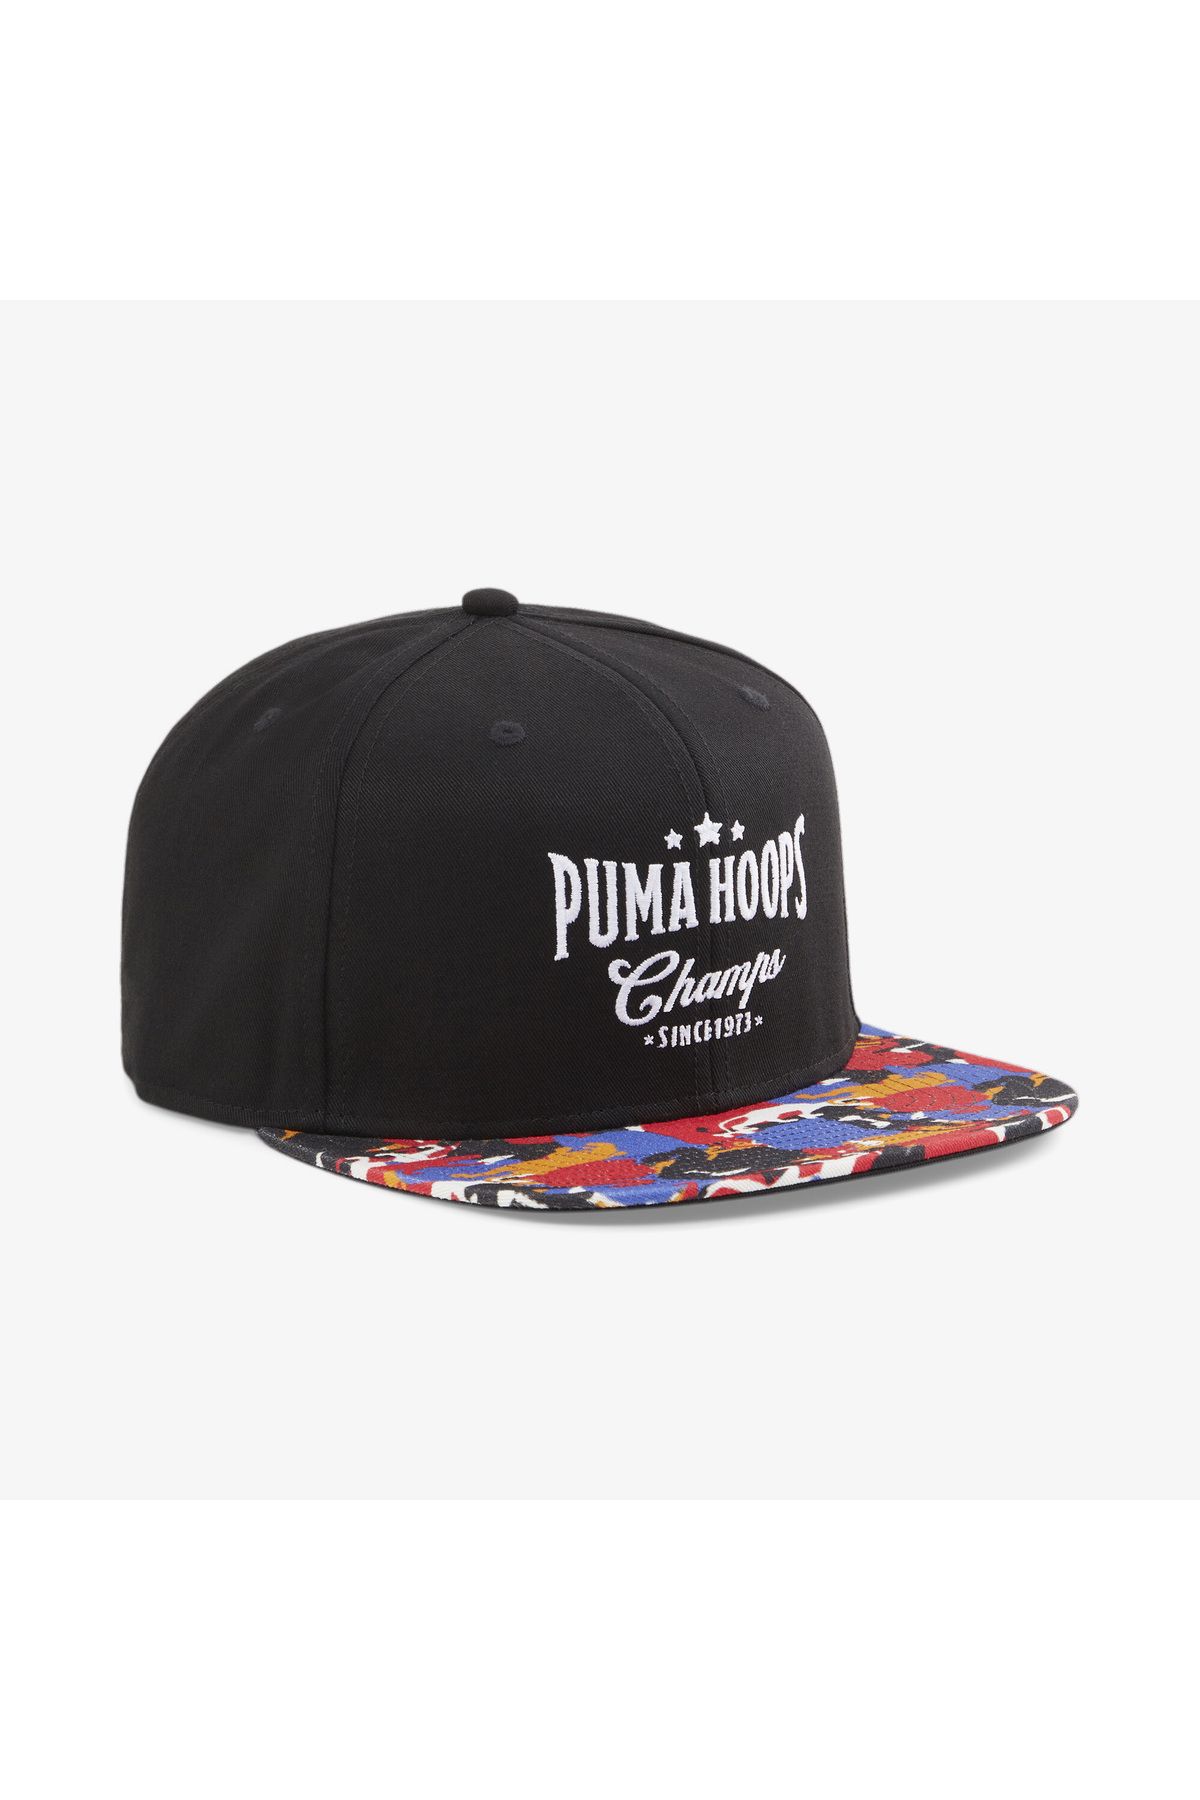 Puma بسکتبال Pro FB Cap کلاه سیاه